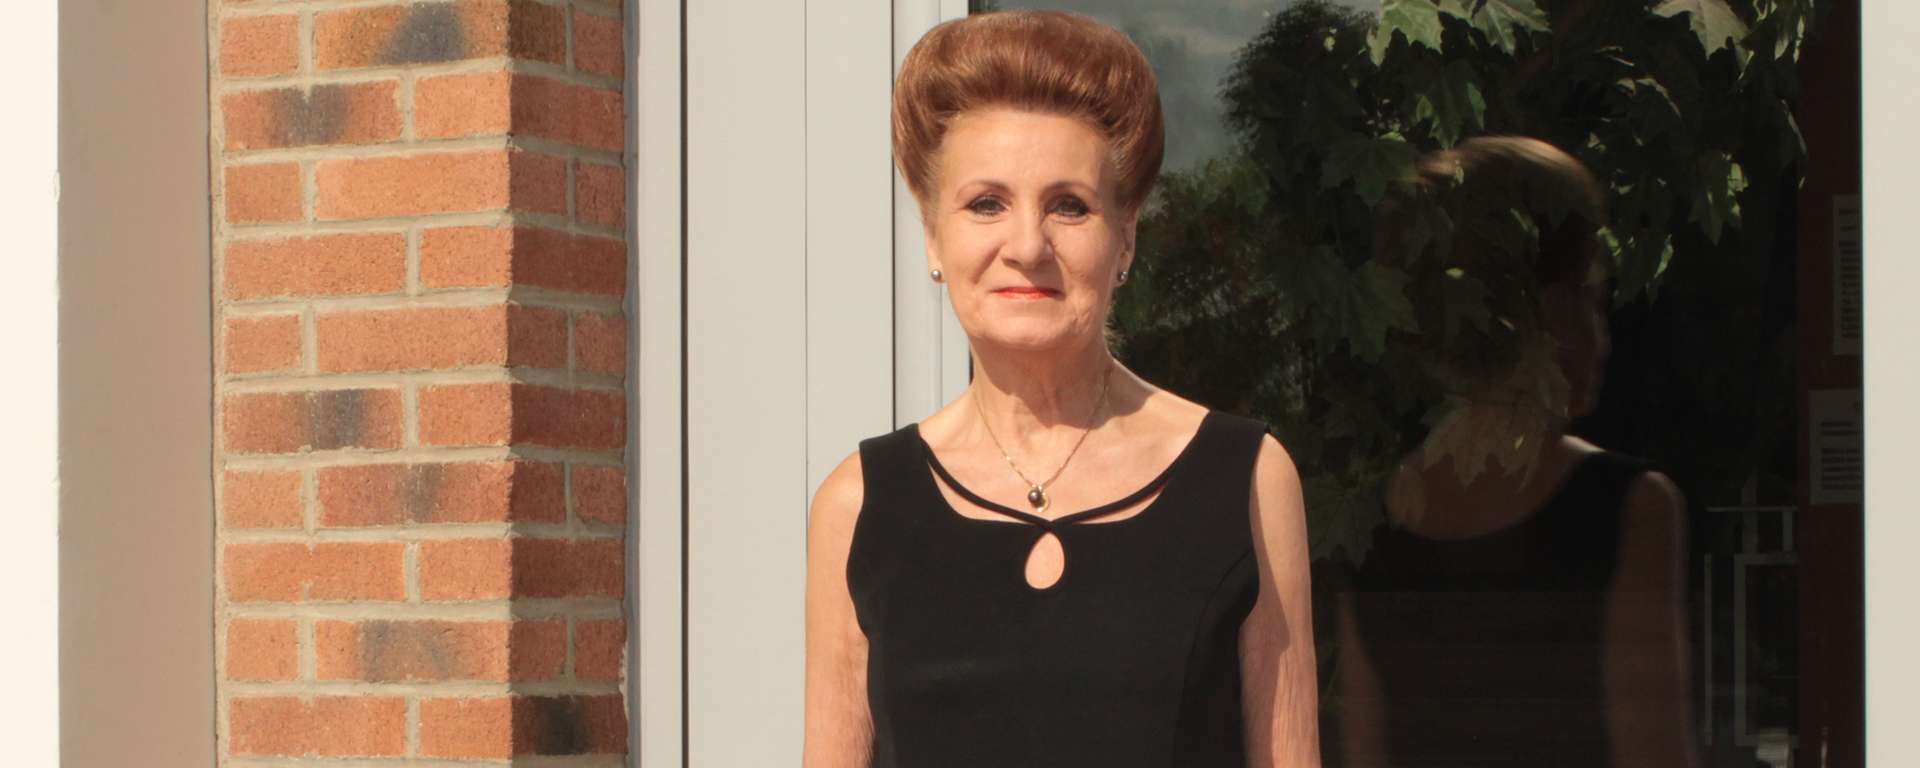 Thérèse D’HAENE, 65 ans – Ancienne secrétaire médicale chez Biofrance